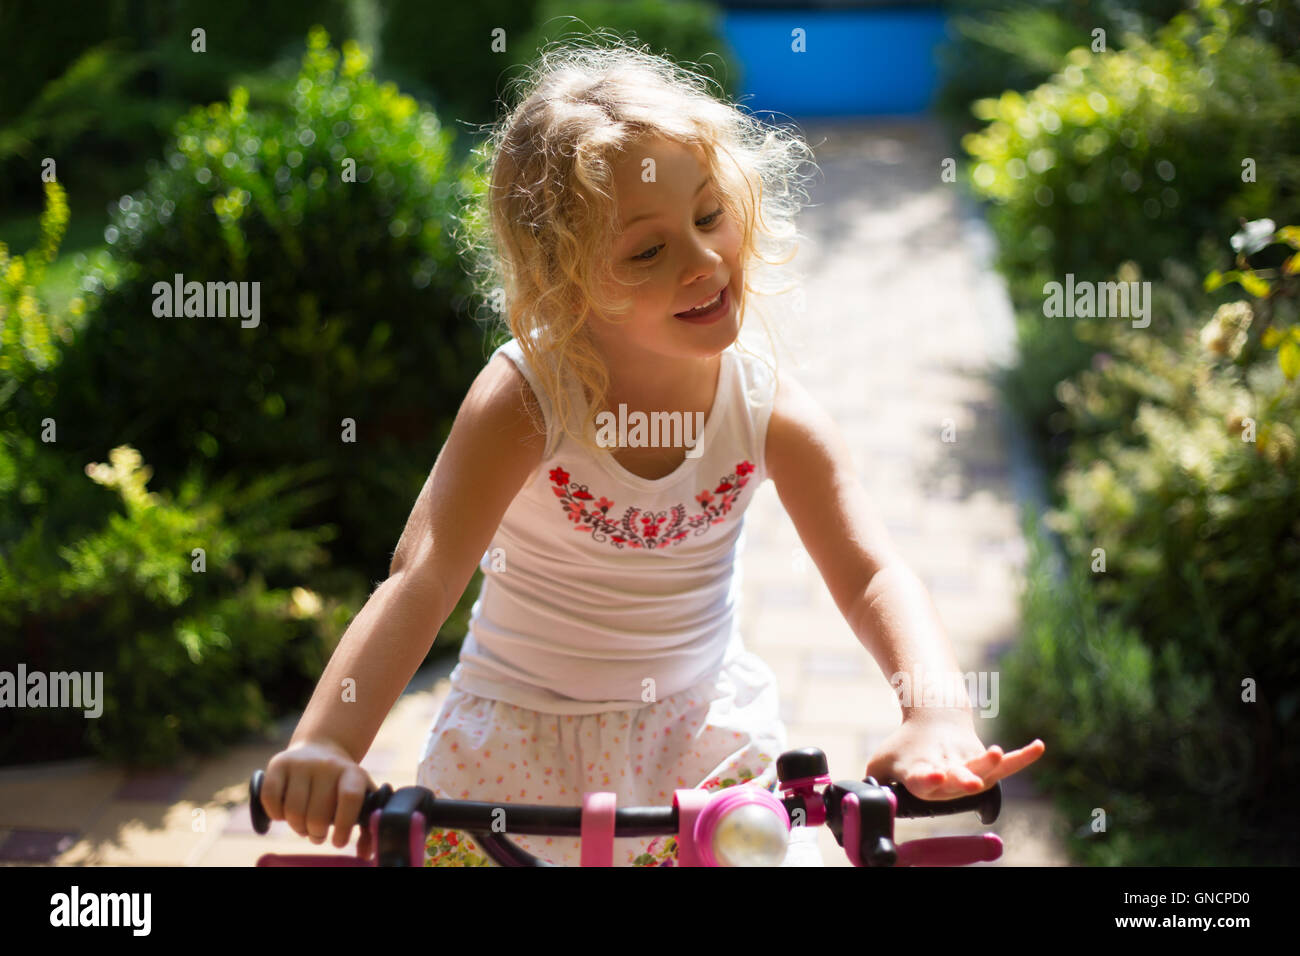 Belle petite fille sur un vélo dans le parc, piscine d'été Banque D'Images